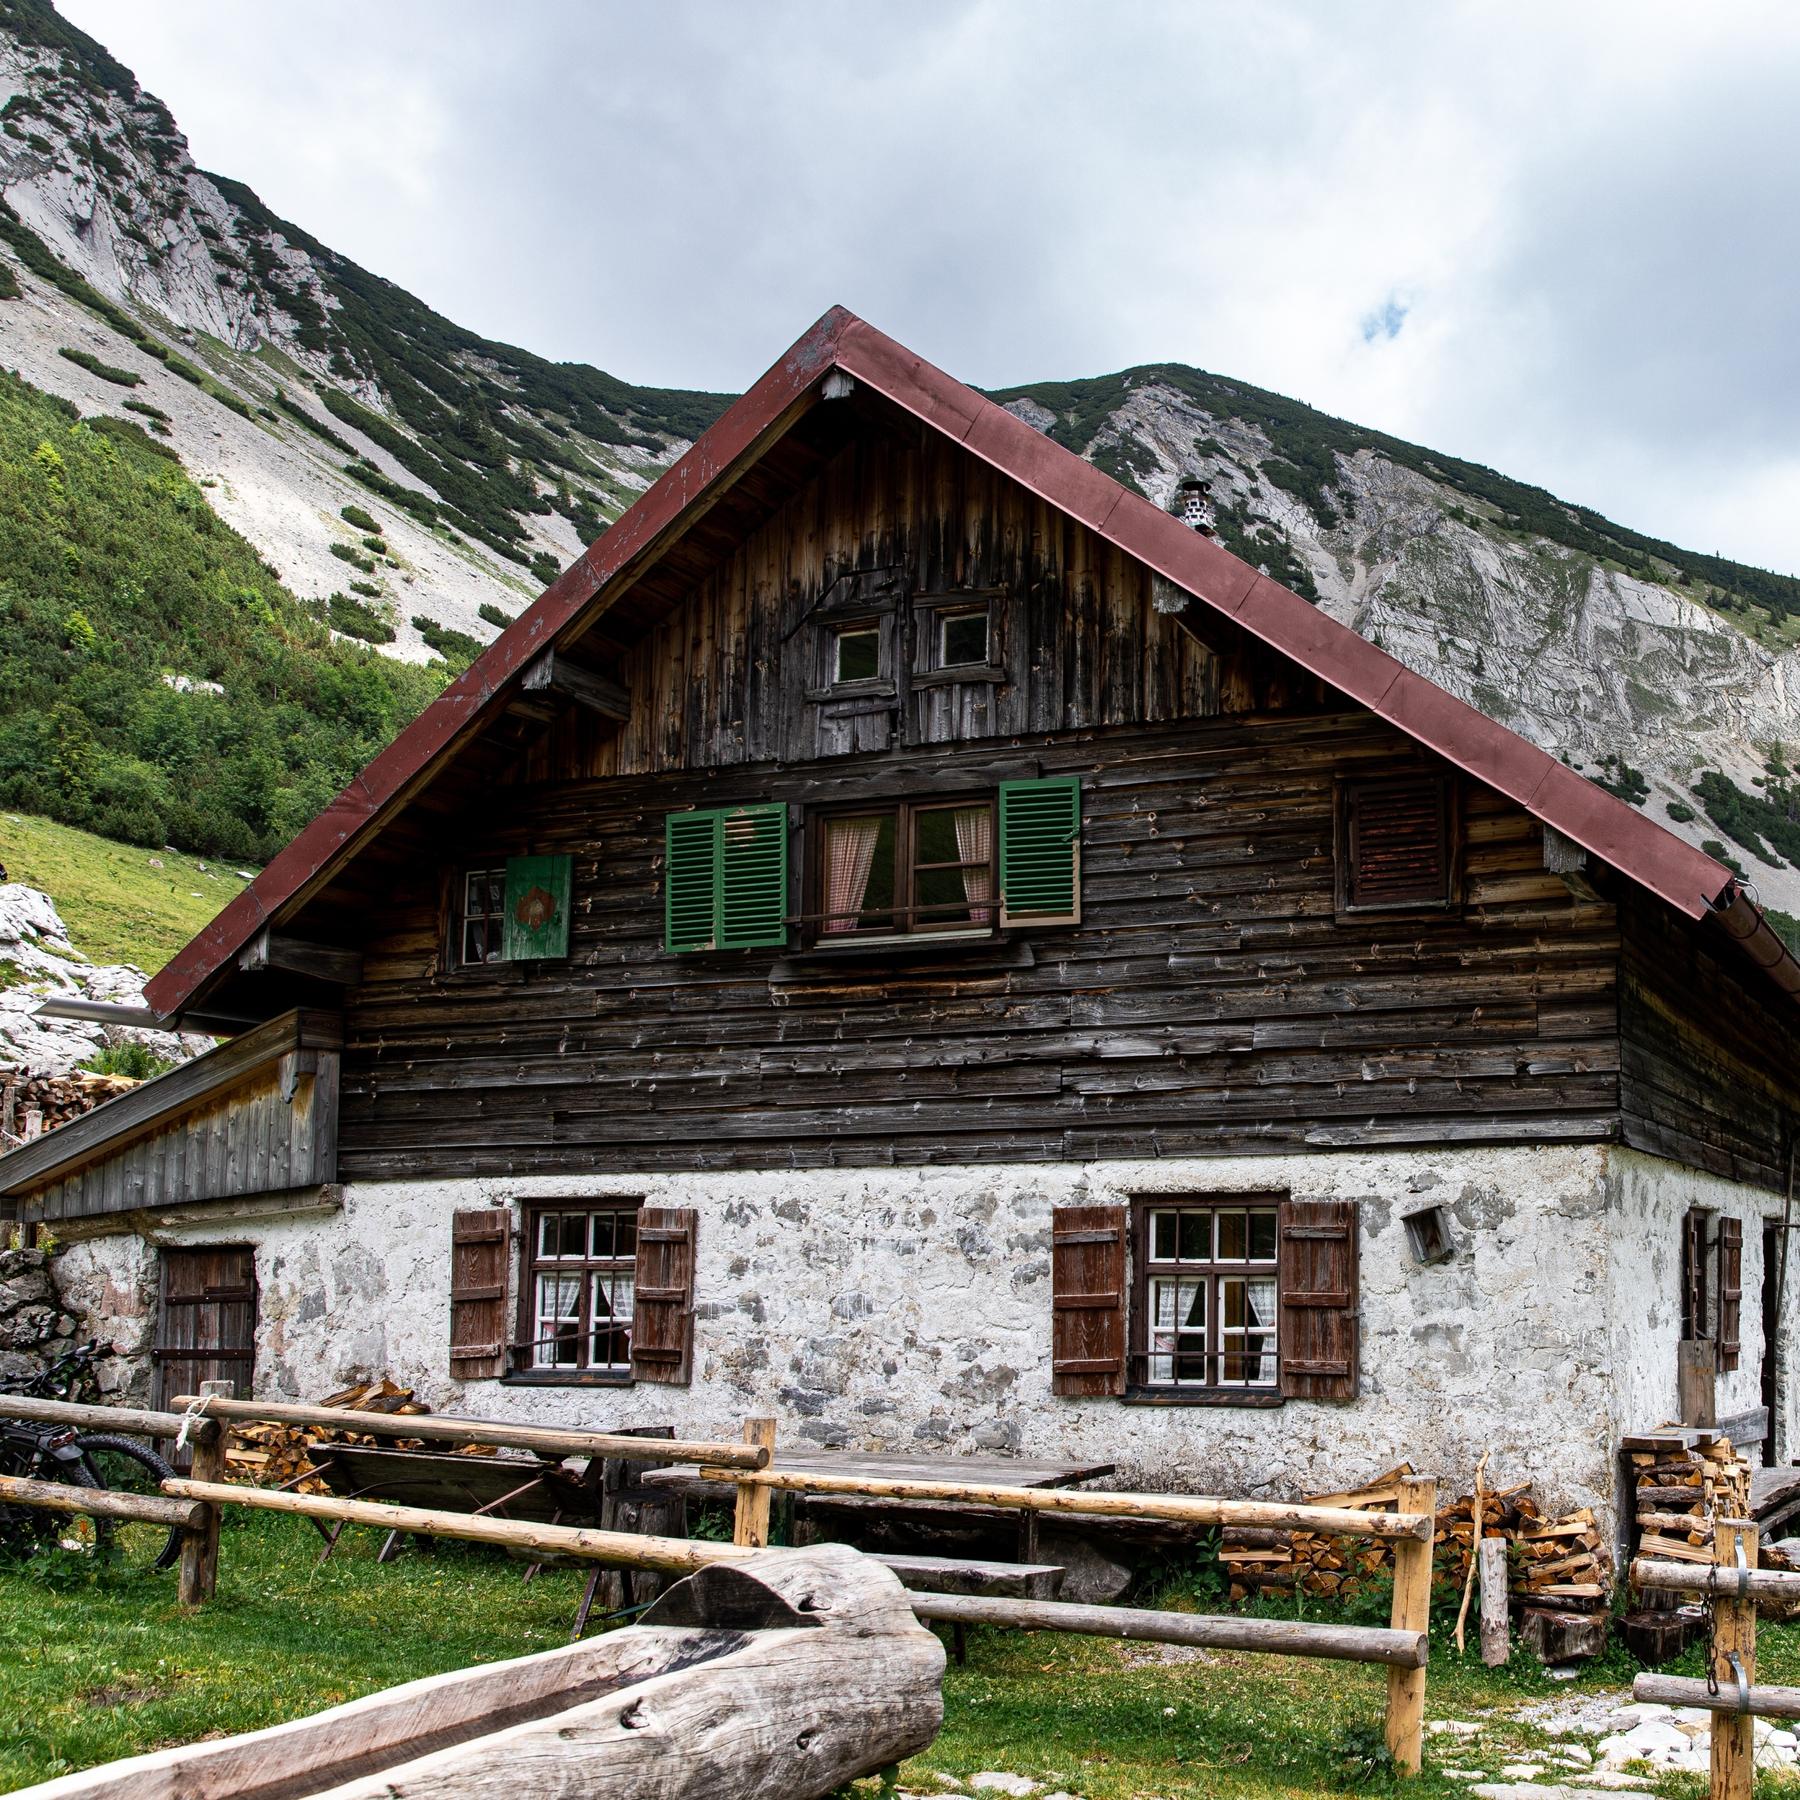 Berghütten früher und heute - Schutzhaus in luftiger Höhe